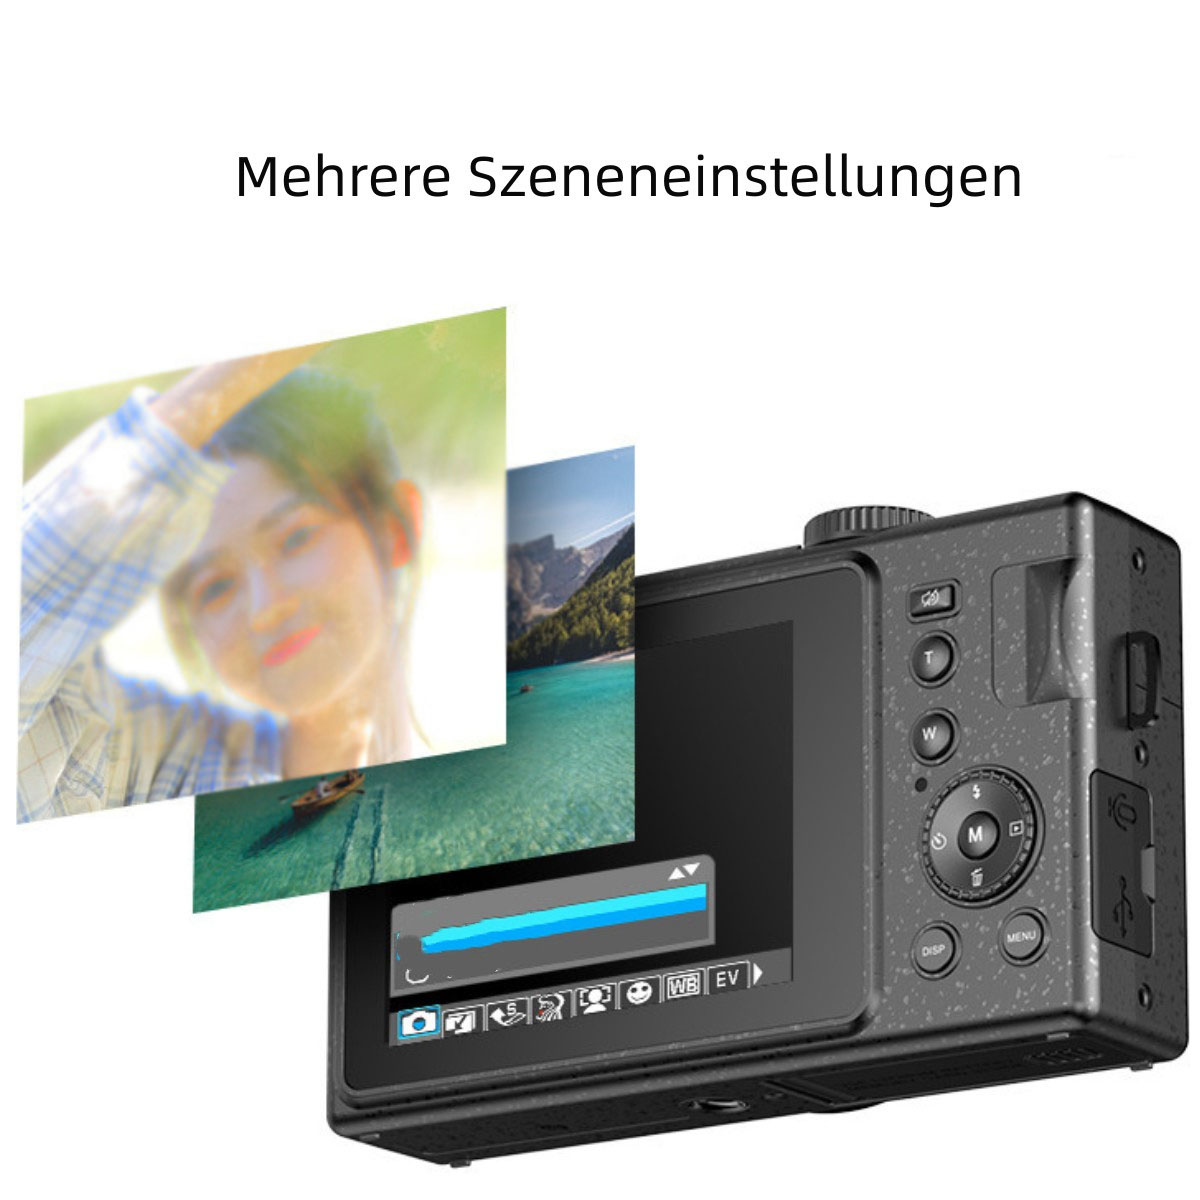 SYNTEK High-Definition-Digitalkamera - mit Stummschaltung Digitalkamera Rosa- Knopfdruck, auf Gesichtserkennung